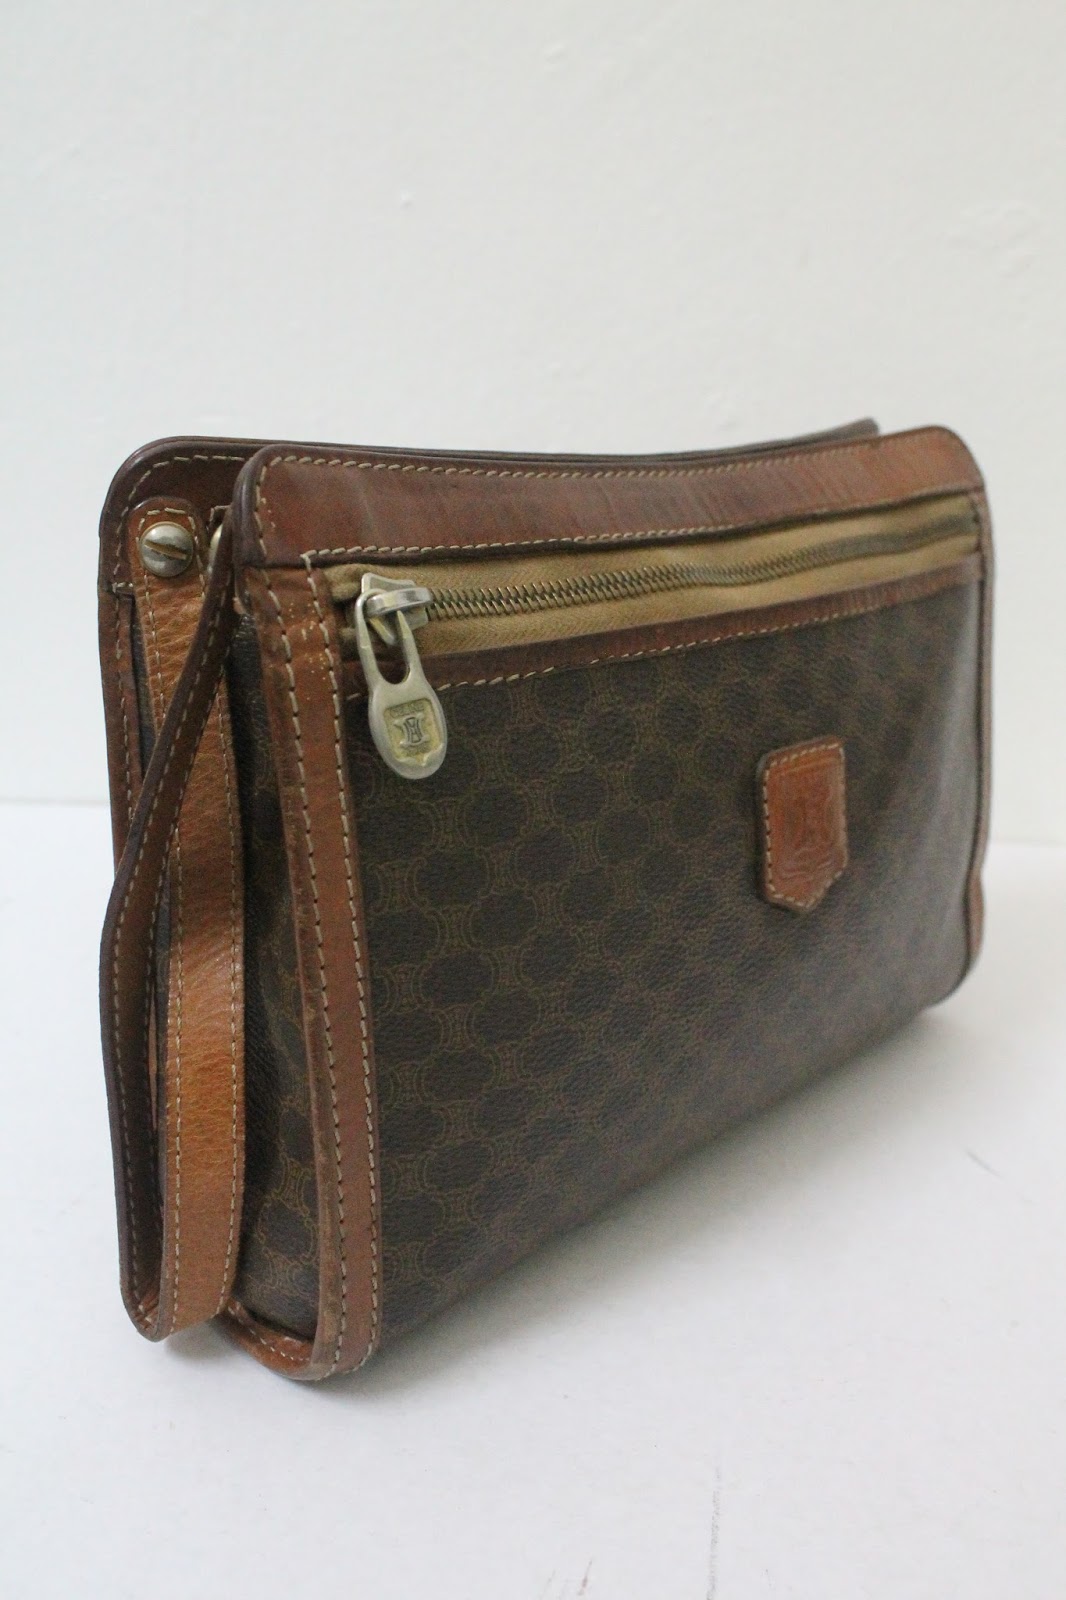 BUNDLEBARANGBAEK: Authentic & Vintage CELINE Leather Clutch Bag.